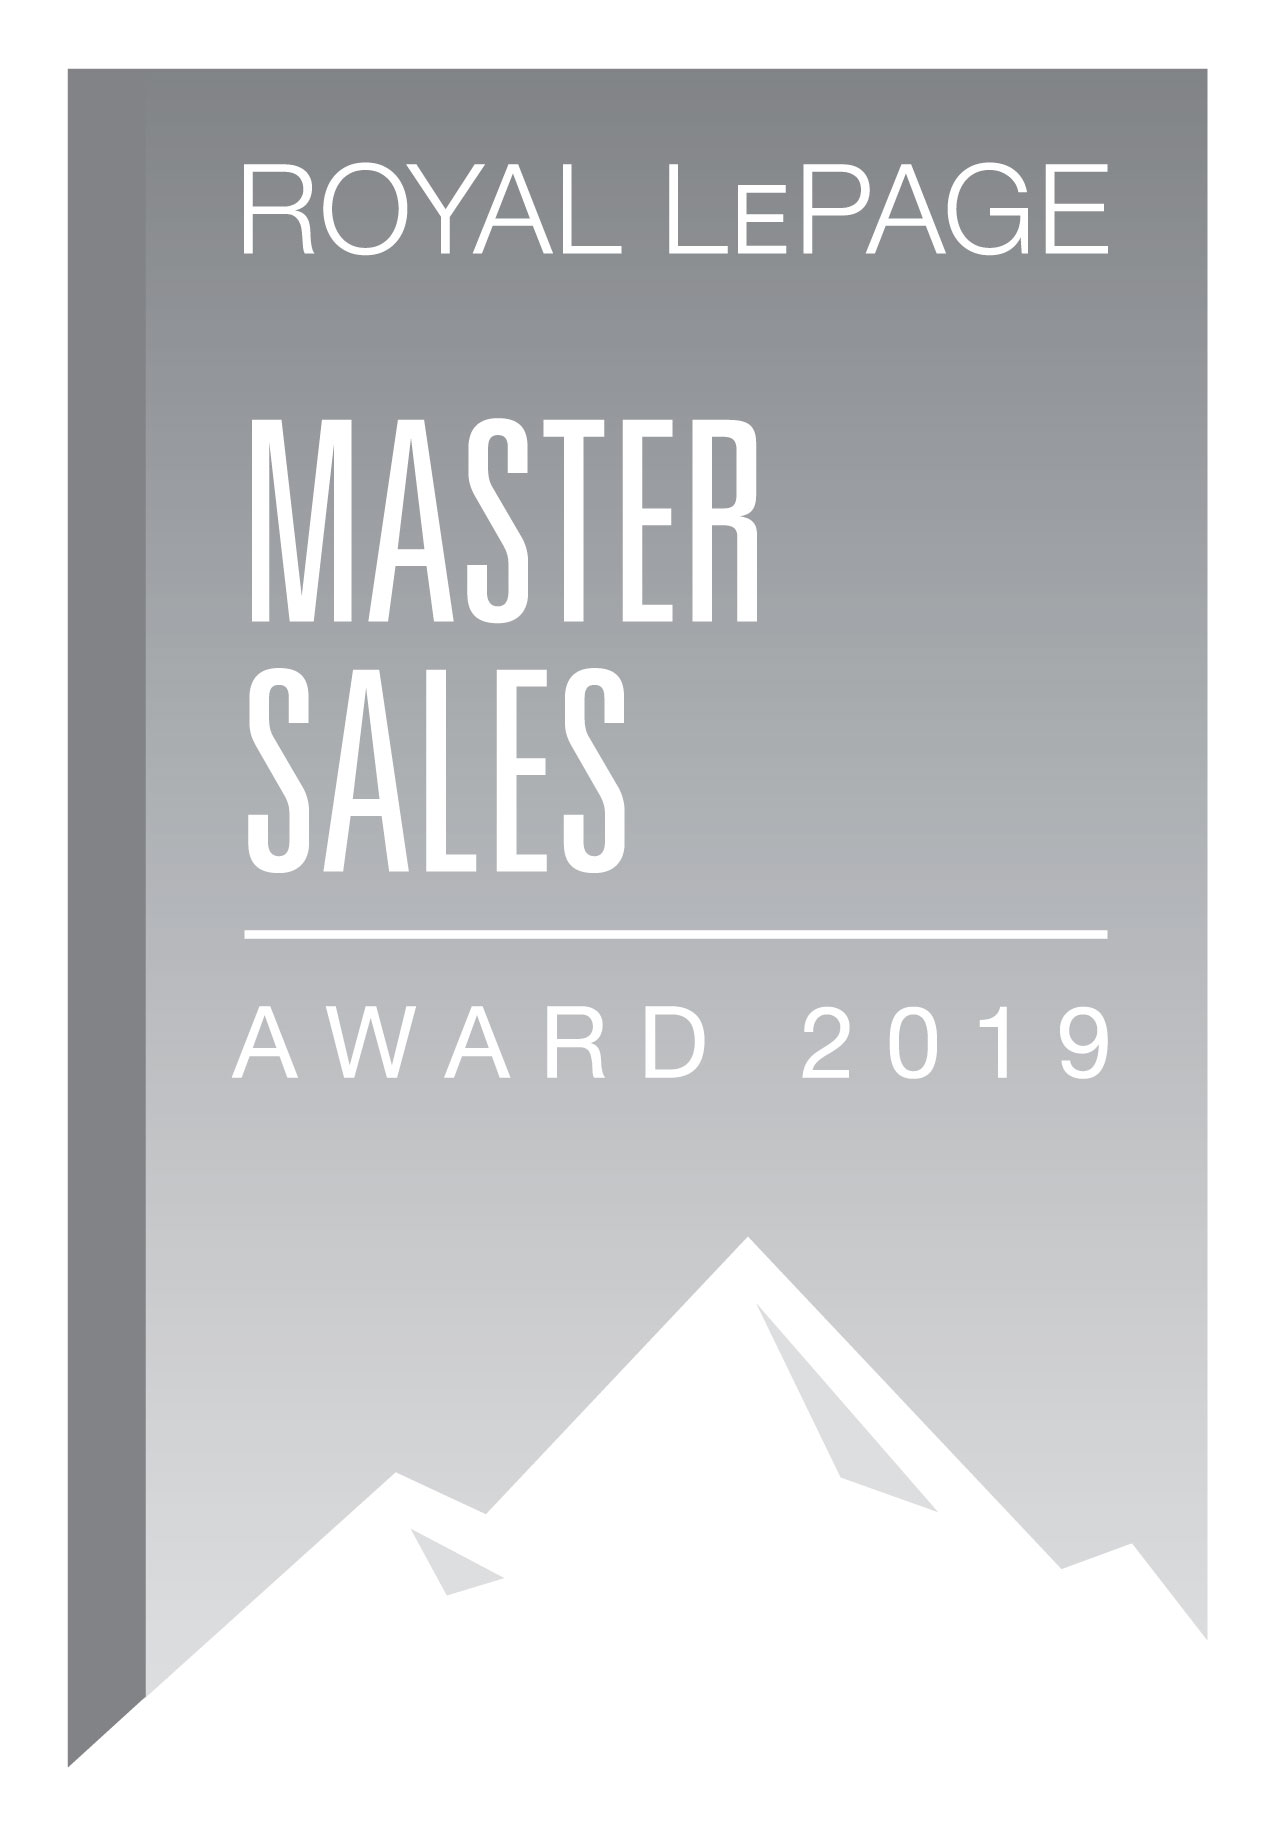 Royal Le Page Master Sales Award 2019